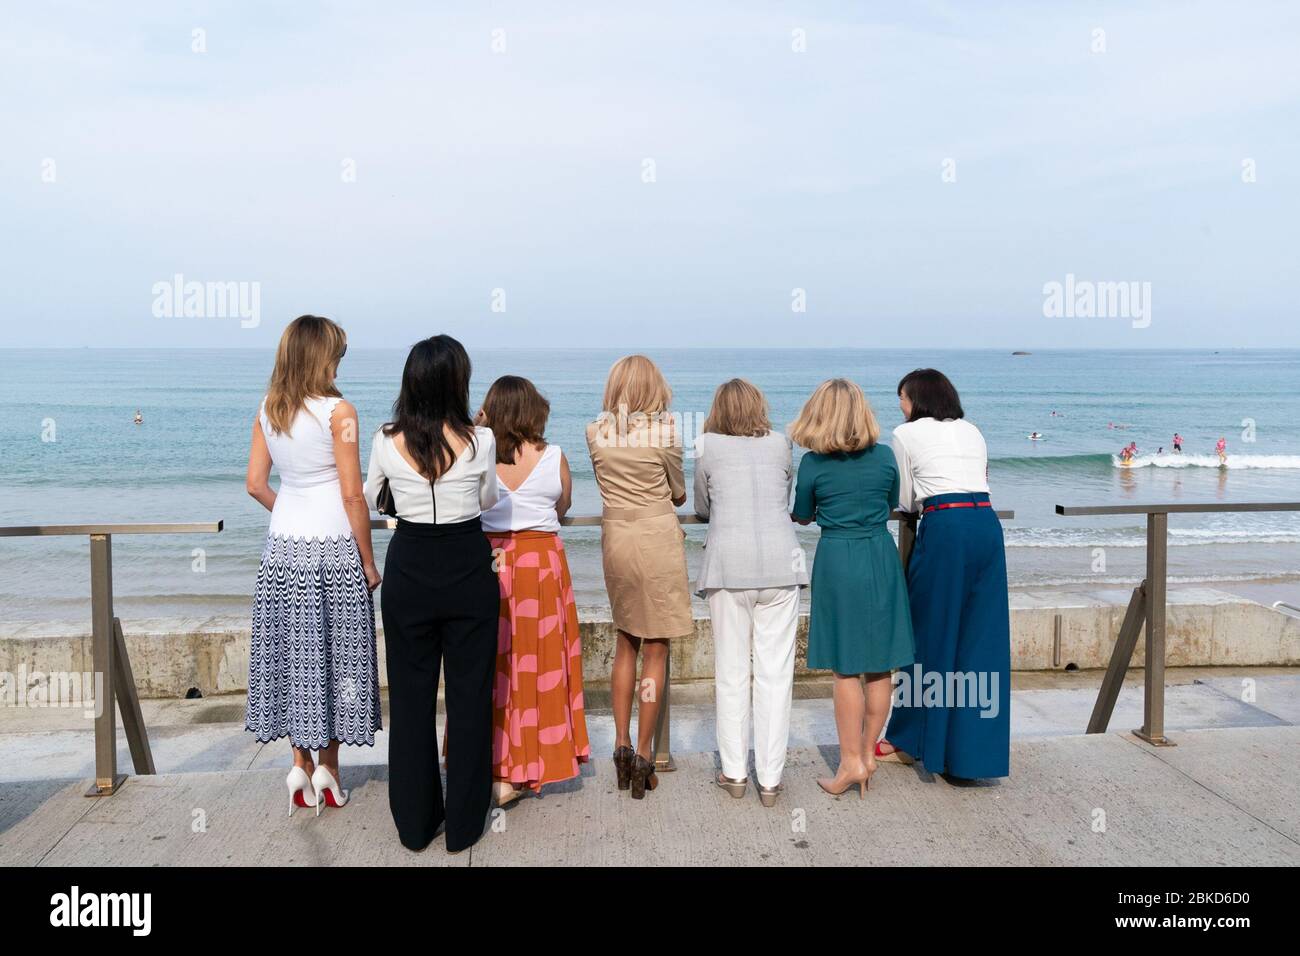 First Lady Melania Trump observe une manifestation de surf avec les conjoints des dirigeants du G-7 lundi 26 août 2019, à la plage des Côtes des Basques de Biarritz, France. #G7Biarritz Banque D'Images